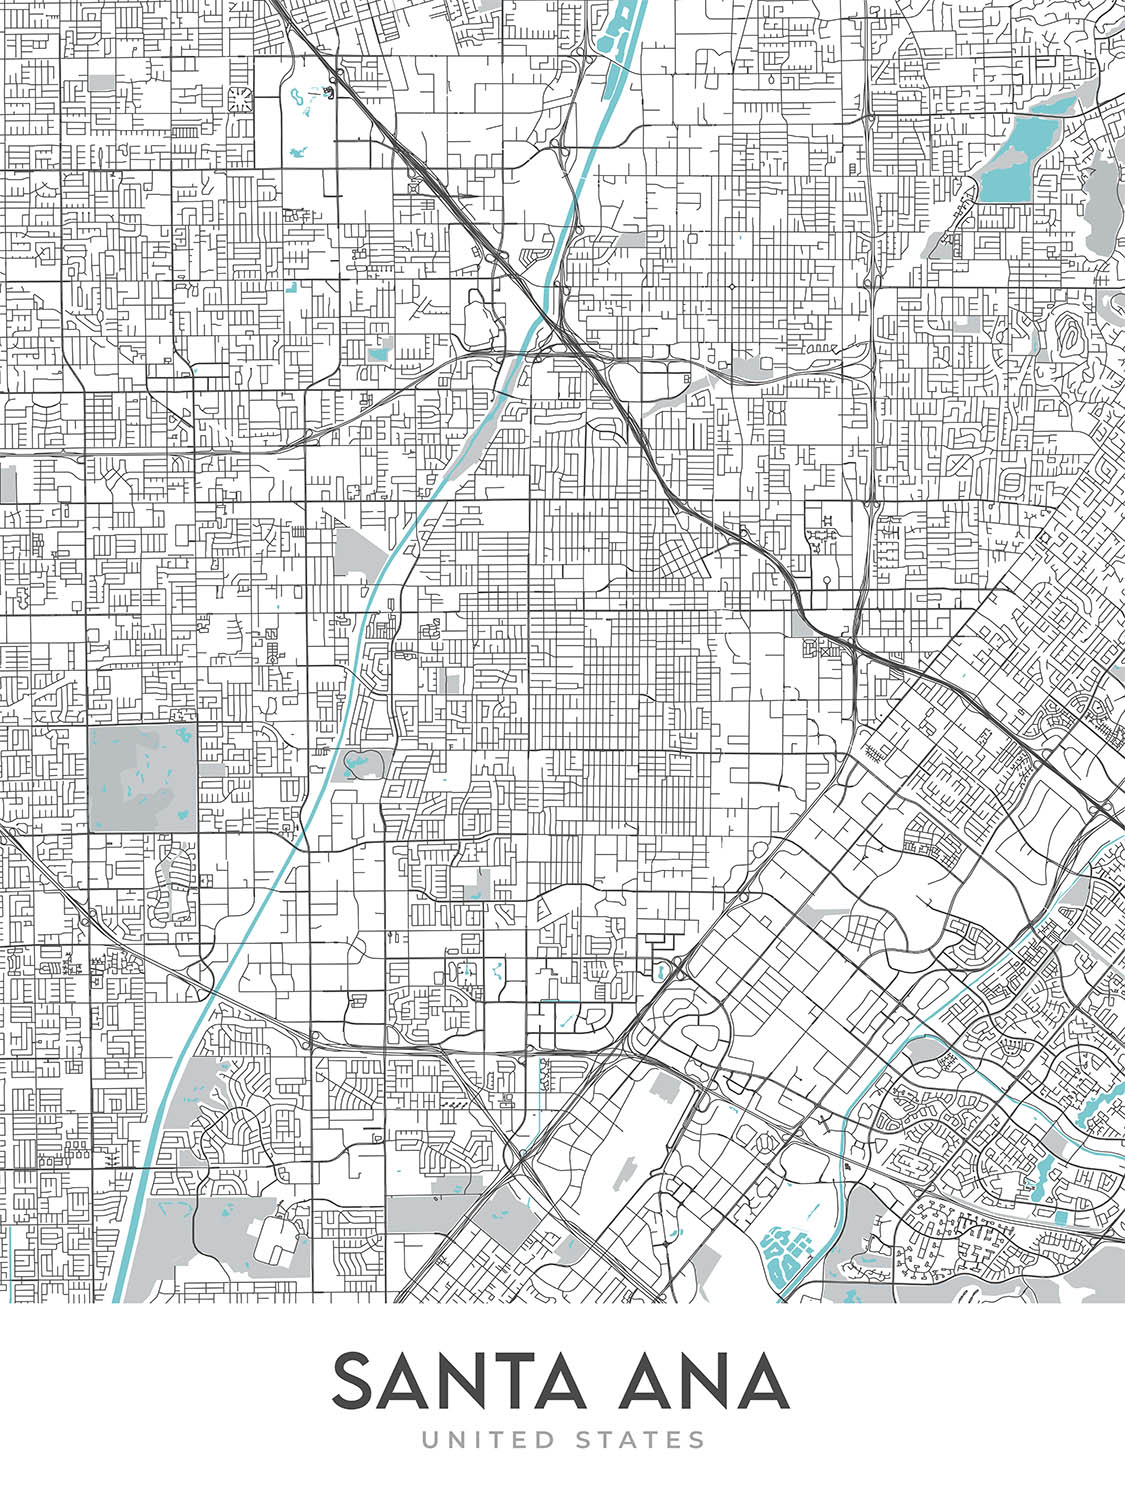 Modern City Map of Santa Ana, CA: Downtown, Bowers Museum, Honda Center, I-5, CA-55